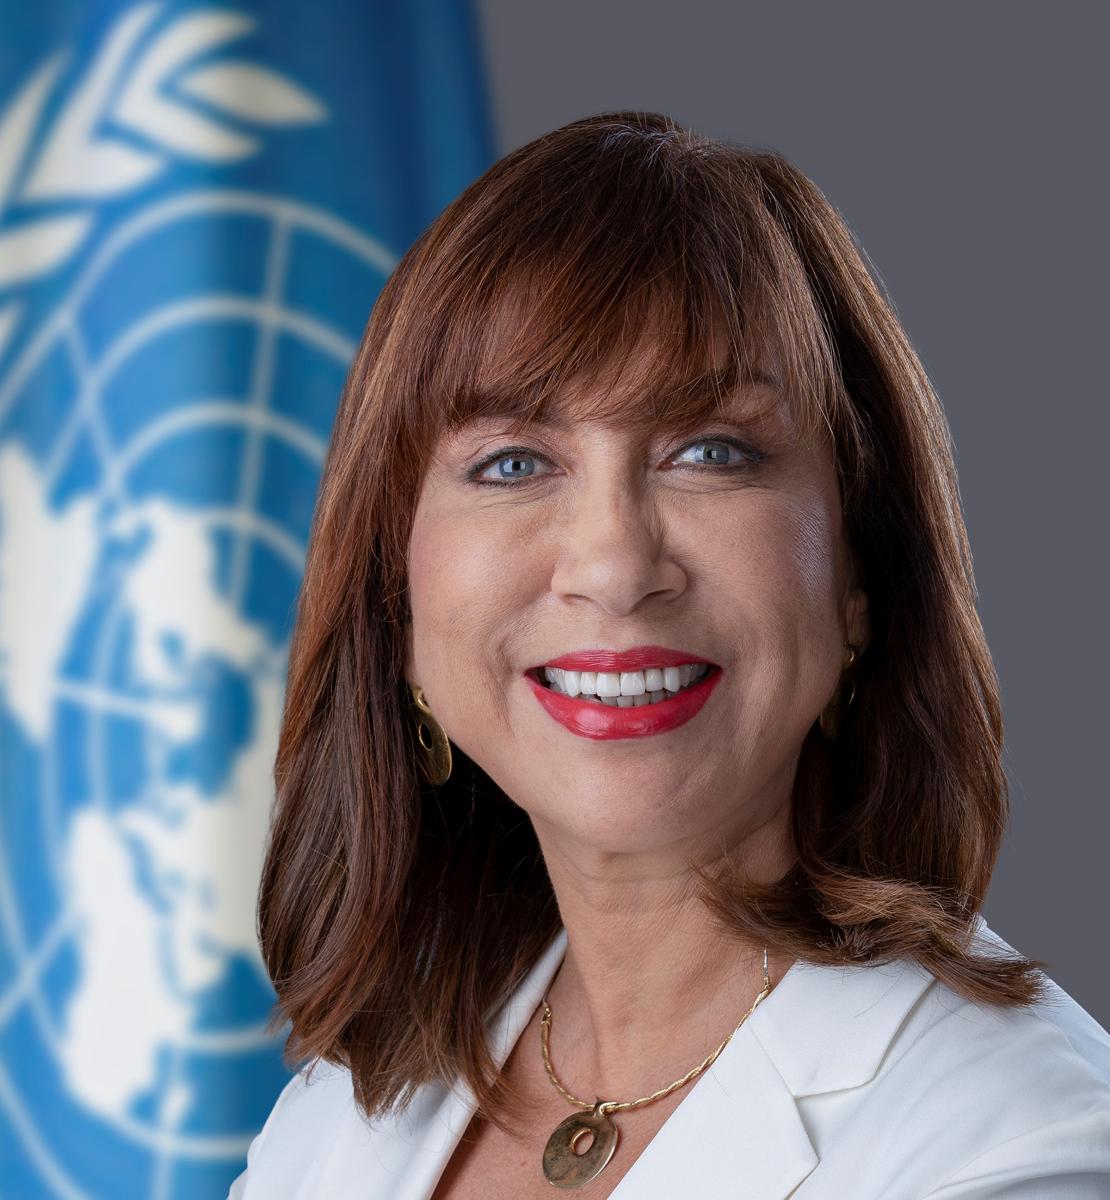 Légende: Mme Hanaa Singer-Hamdy a été nommée au poste de Coordonnatrice résidente des Nations Unies au Népal.